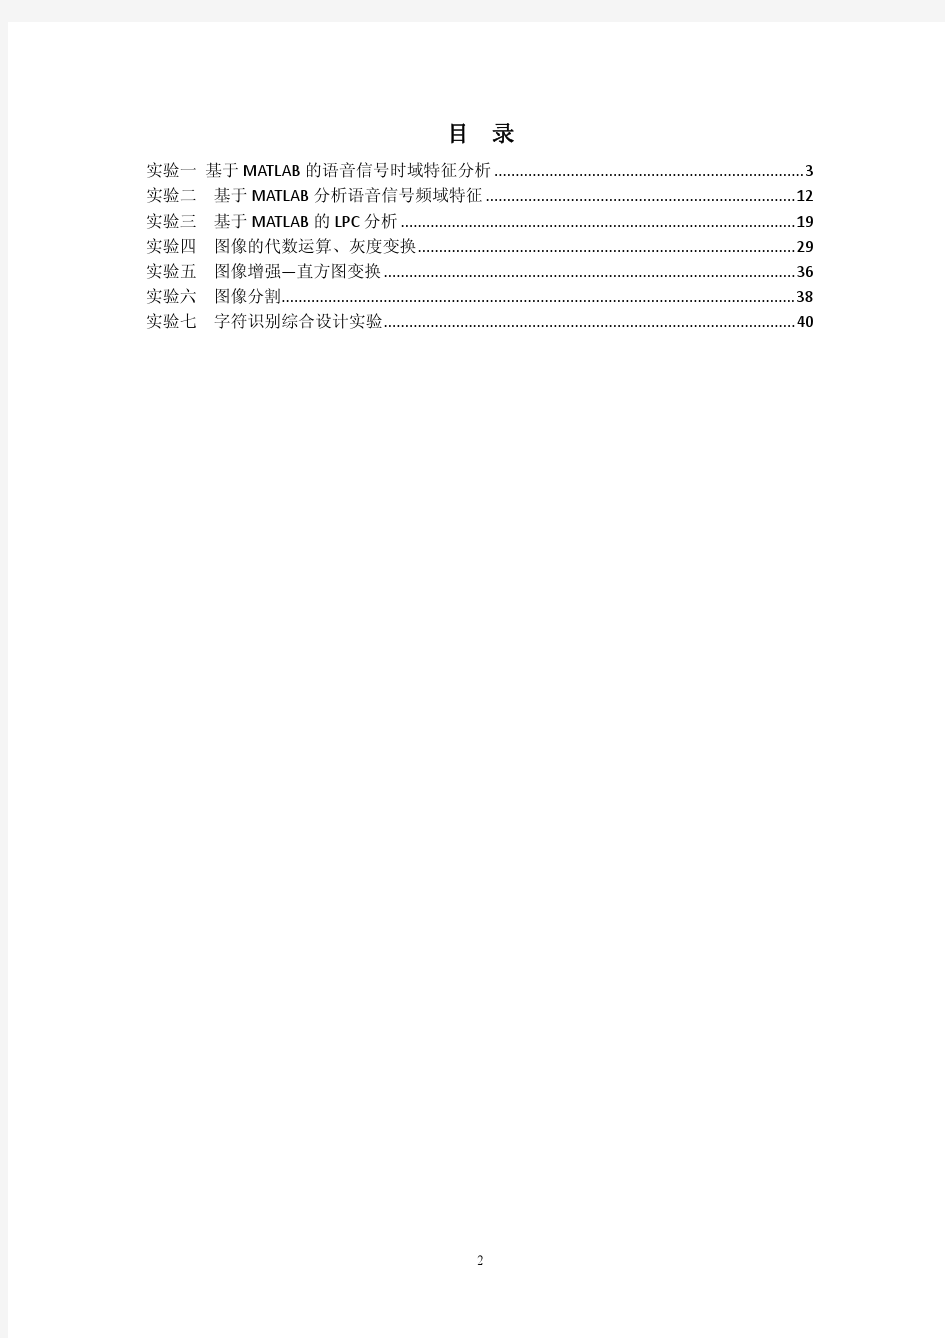 桂林电子科技大学音视频处理技术-实验指导书